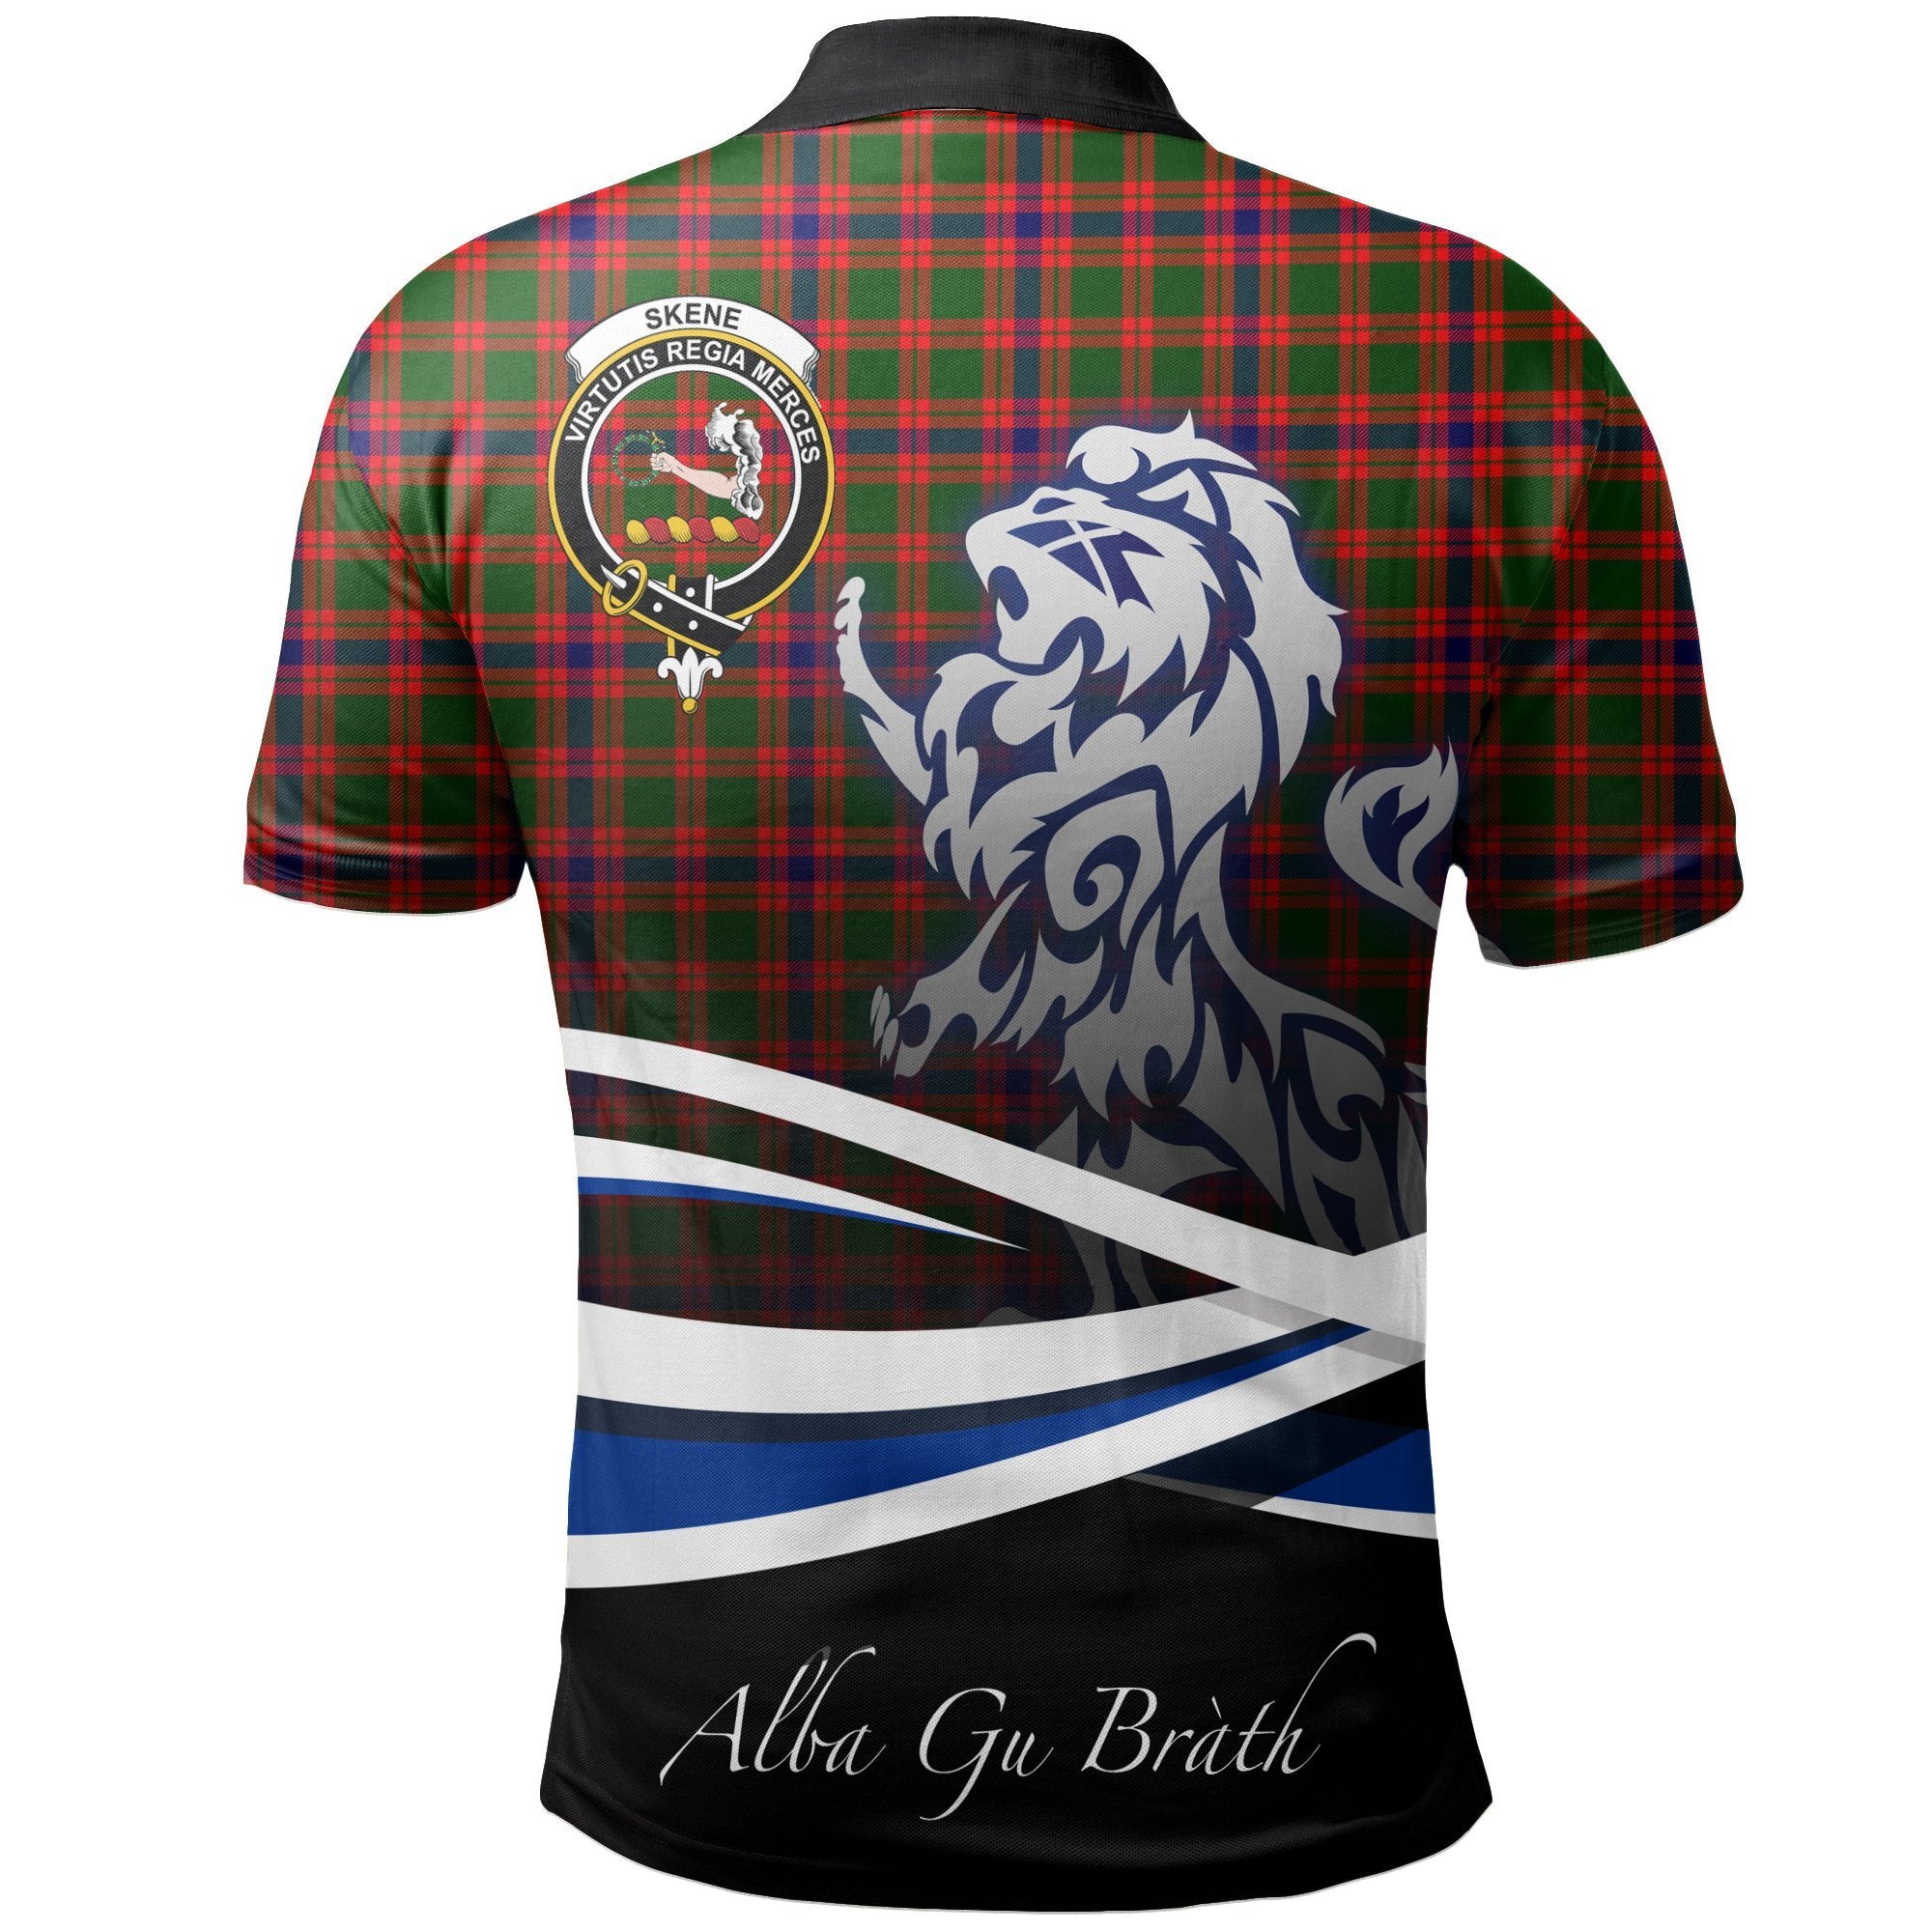 Skene Modern Clan Polo Shirt, Scottish Tartan Skene Modern Clans Polo Shirt Crest Lion Style